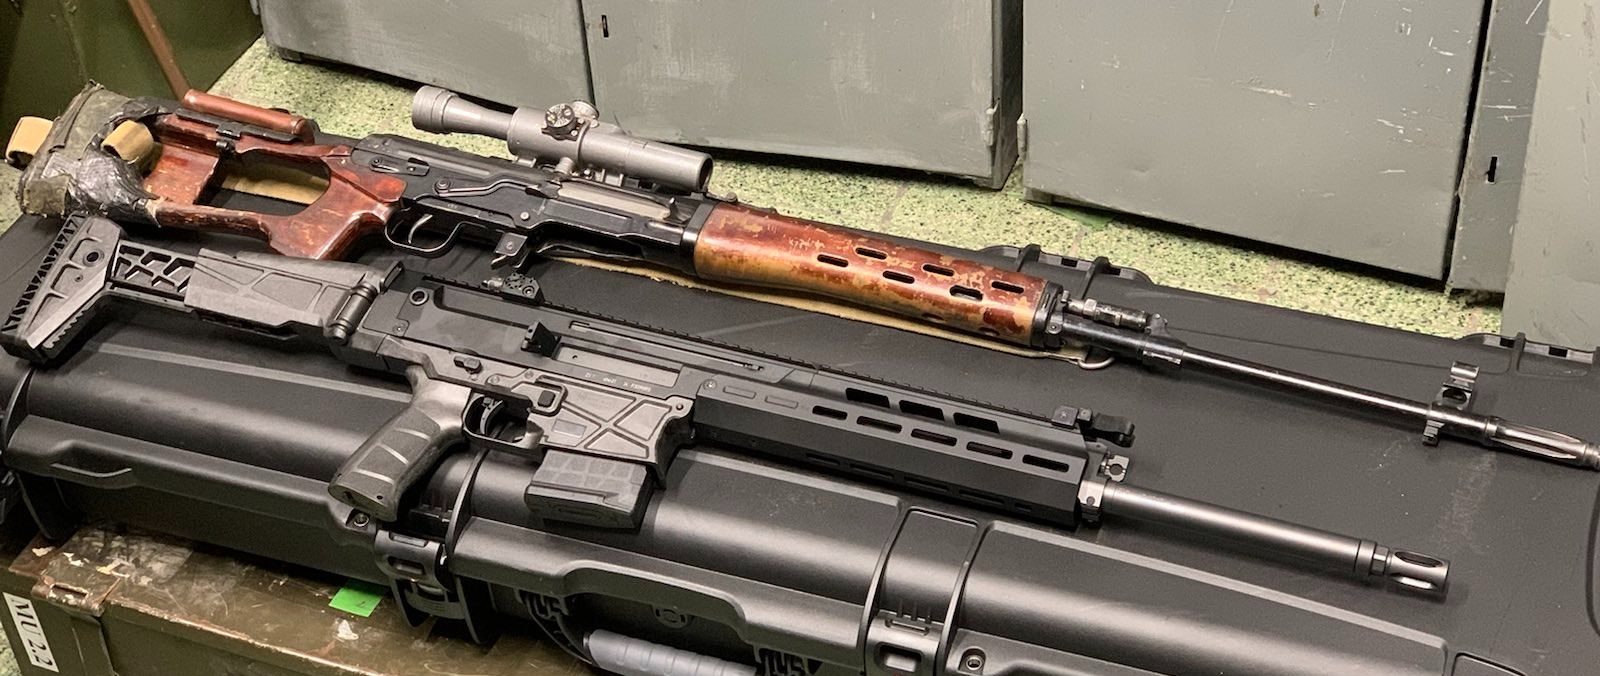 Tschechische Streitkraefte erhalten neues DMR Gewehr CZ Bren 2 PPS 2 Foto armed forces CZ e1643008752890